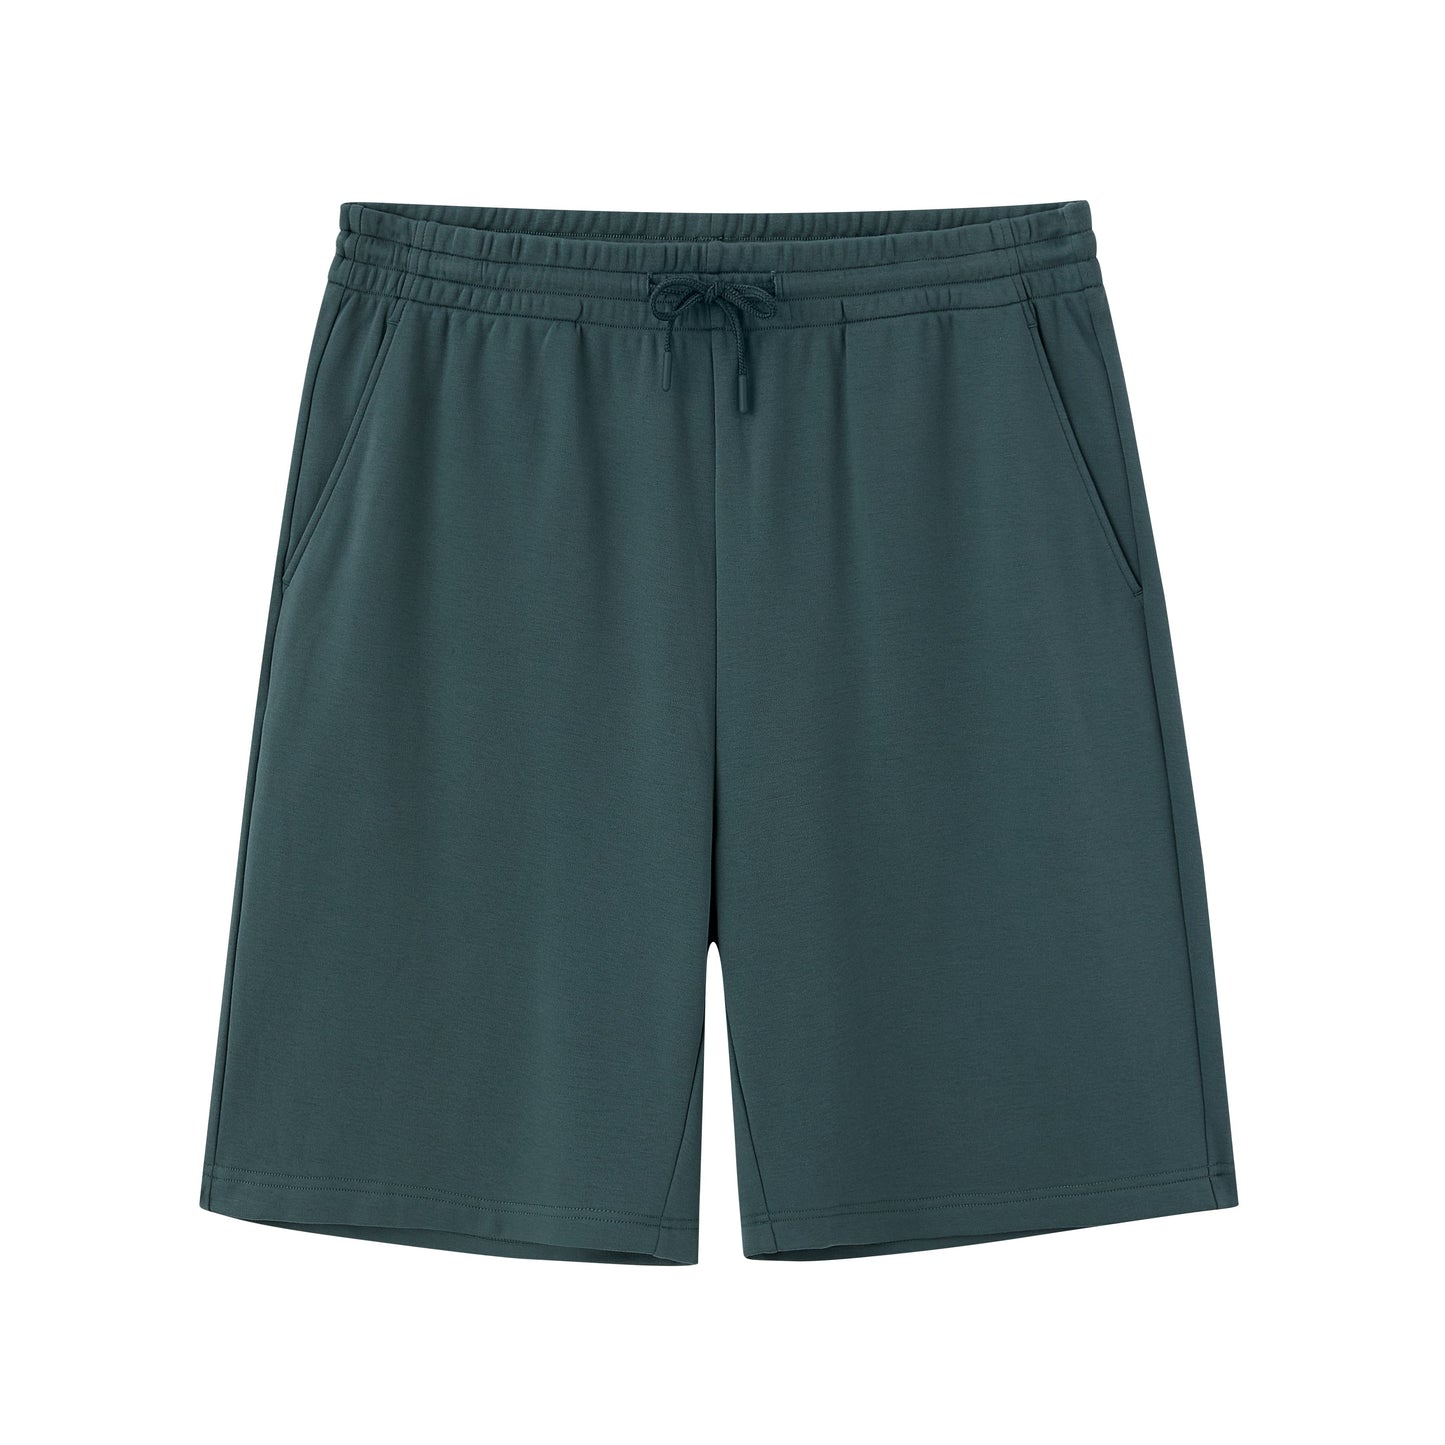 flat lay image of green shorts